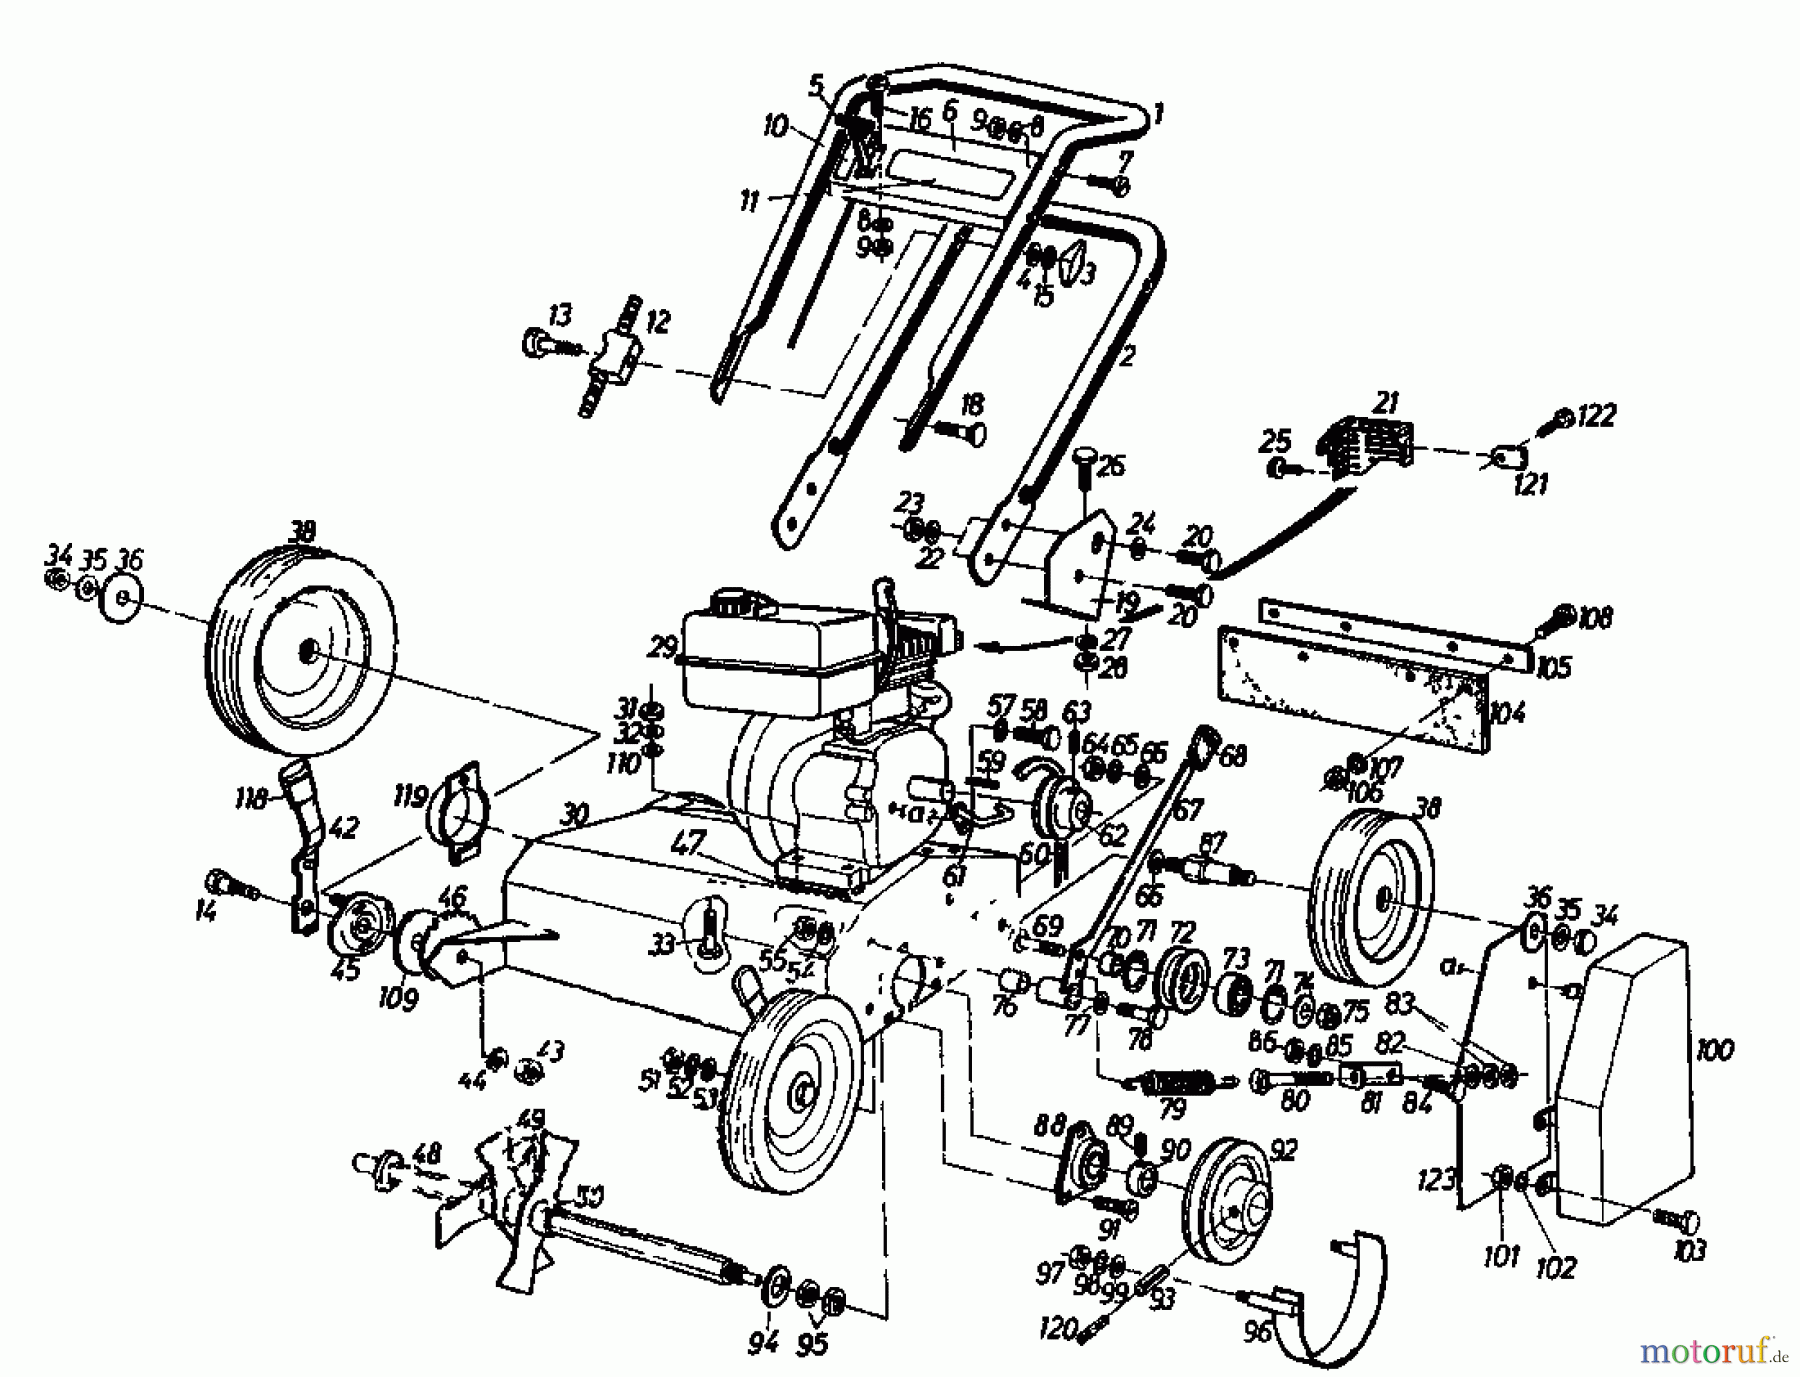  Gutbrod Petrol verticutter VS 50 A 00053.01  (1987) Basic machine